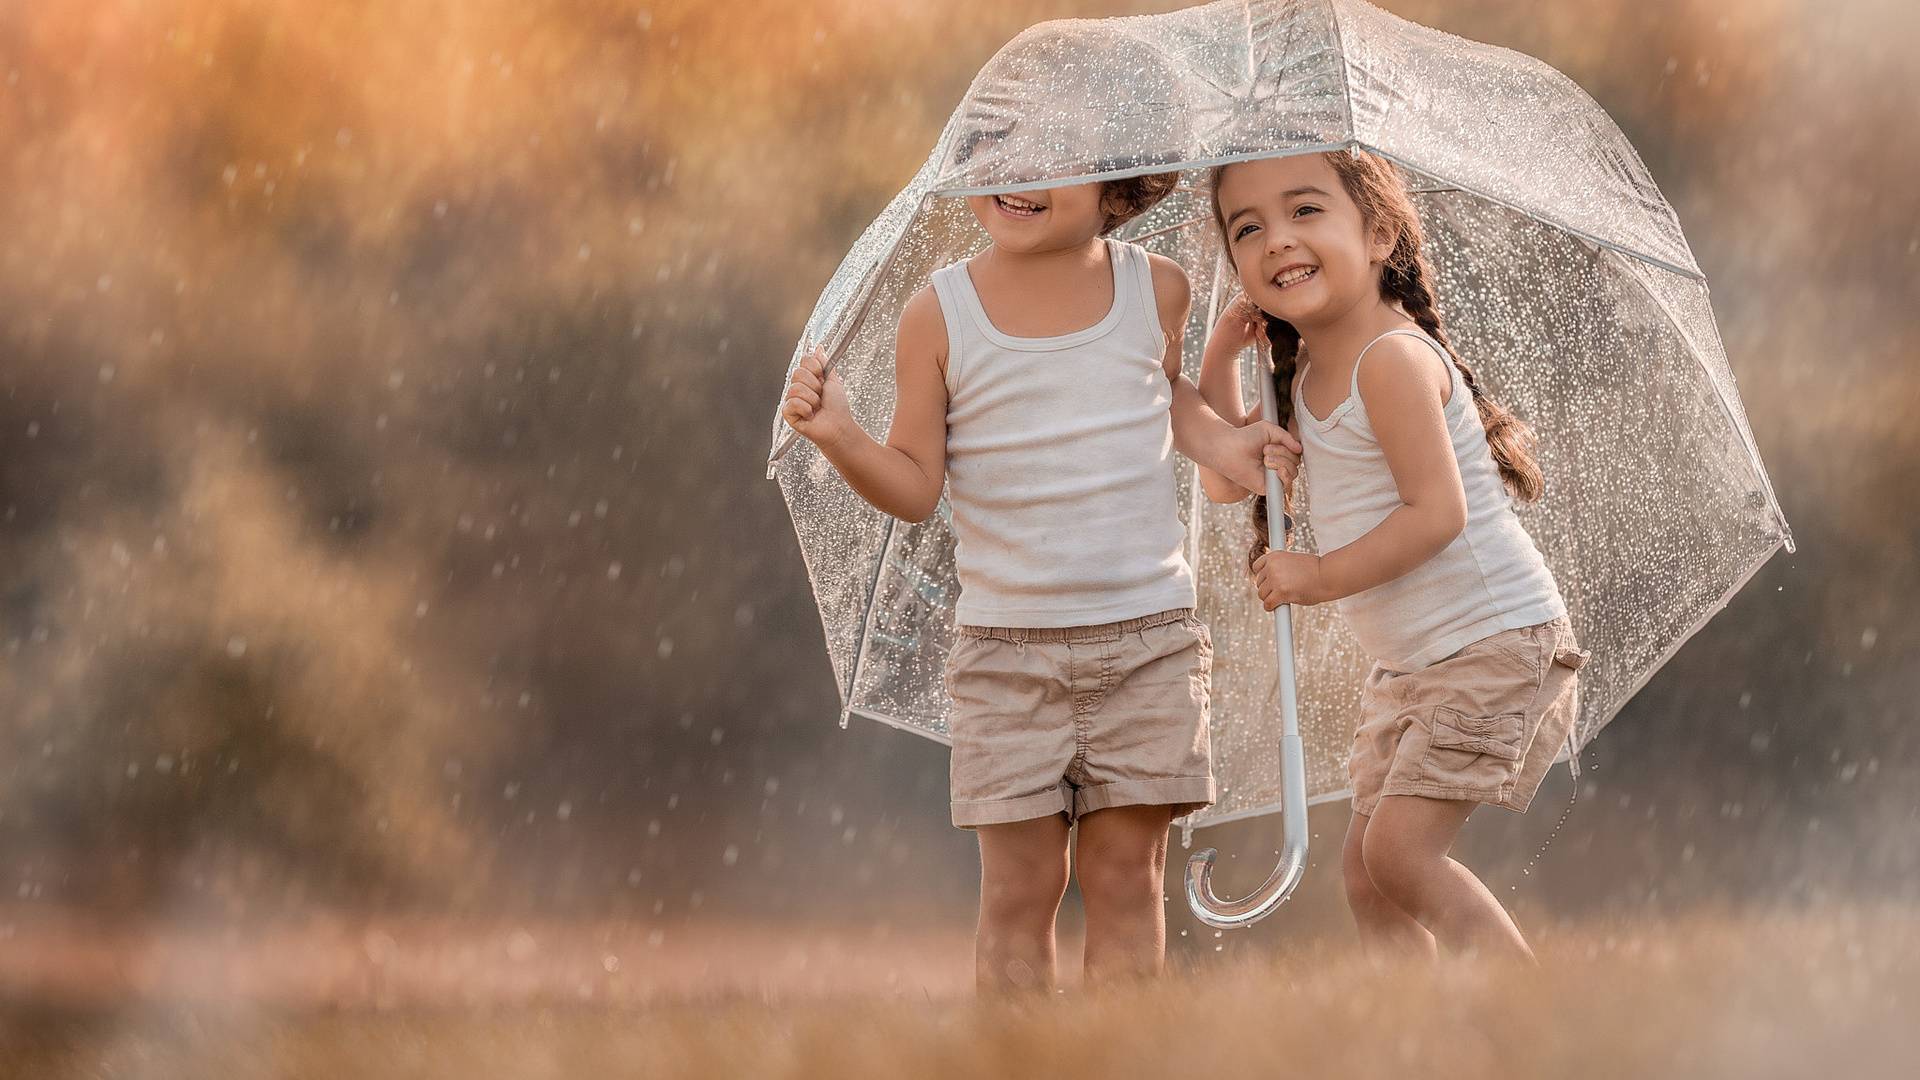 То жара, то ливень, то ветер… А как одеть ребенка в такую погоду